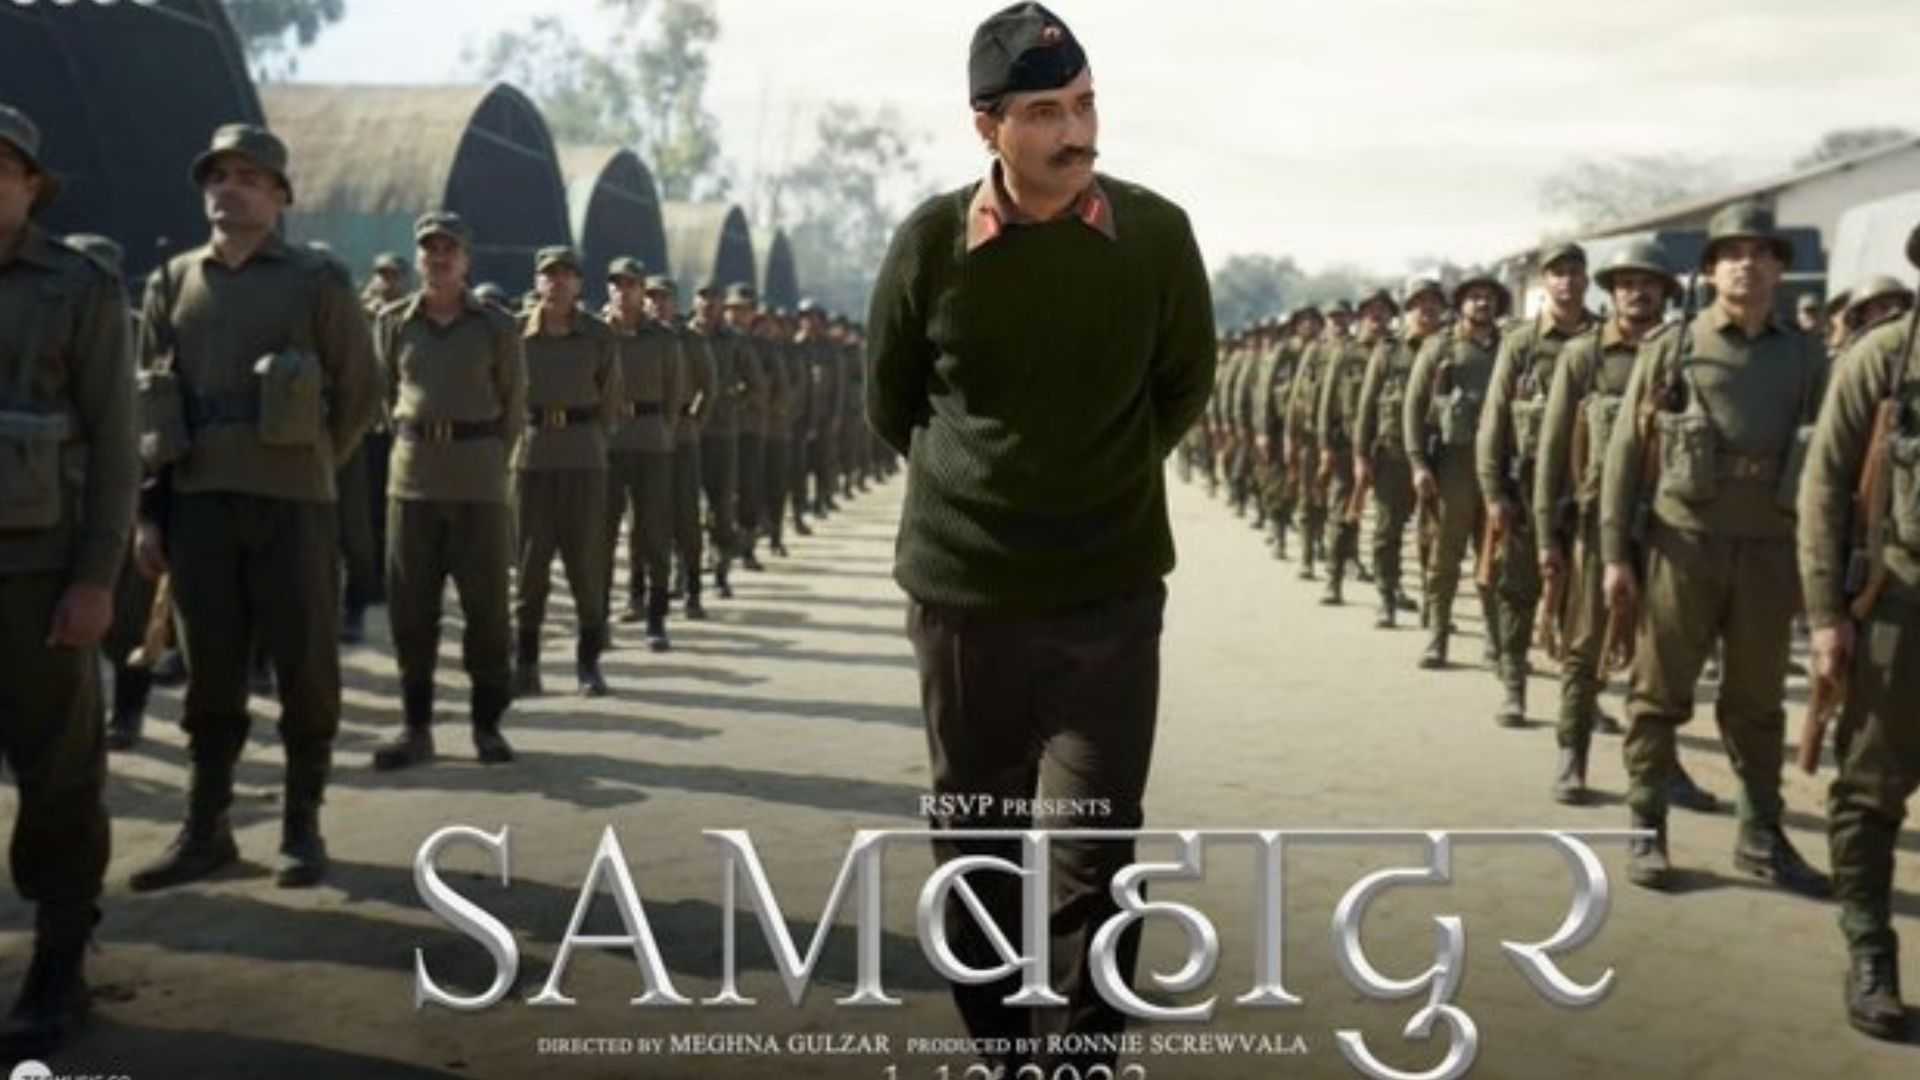 Sam Bahadur Review: सैम बहादुर बनकर विक्की ने तय किया देशद्रोही से लेकर पद्म विभूषण तक का सफर, रफ्तार से दौड़ती दिखी कहानी